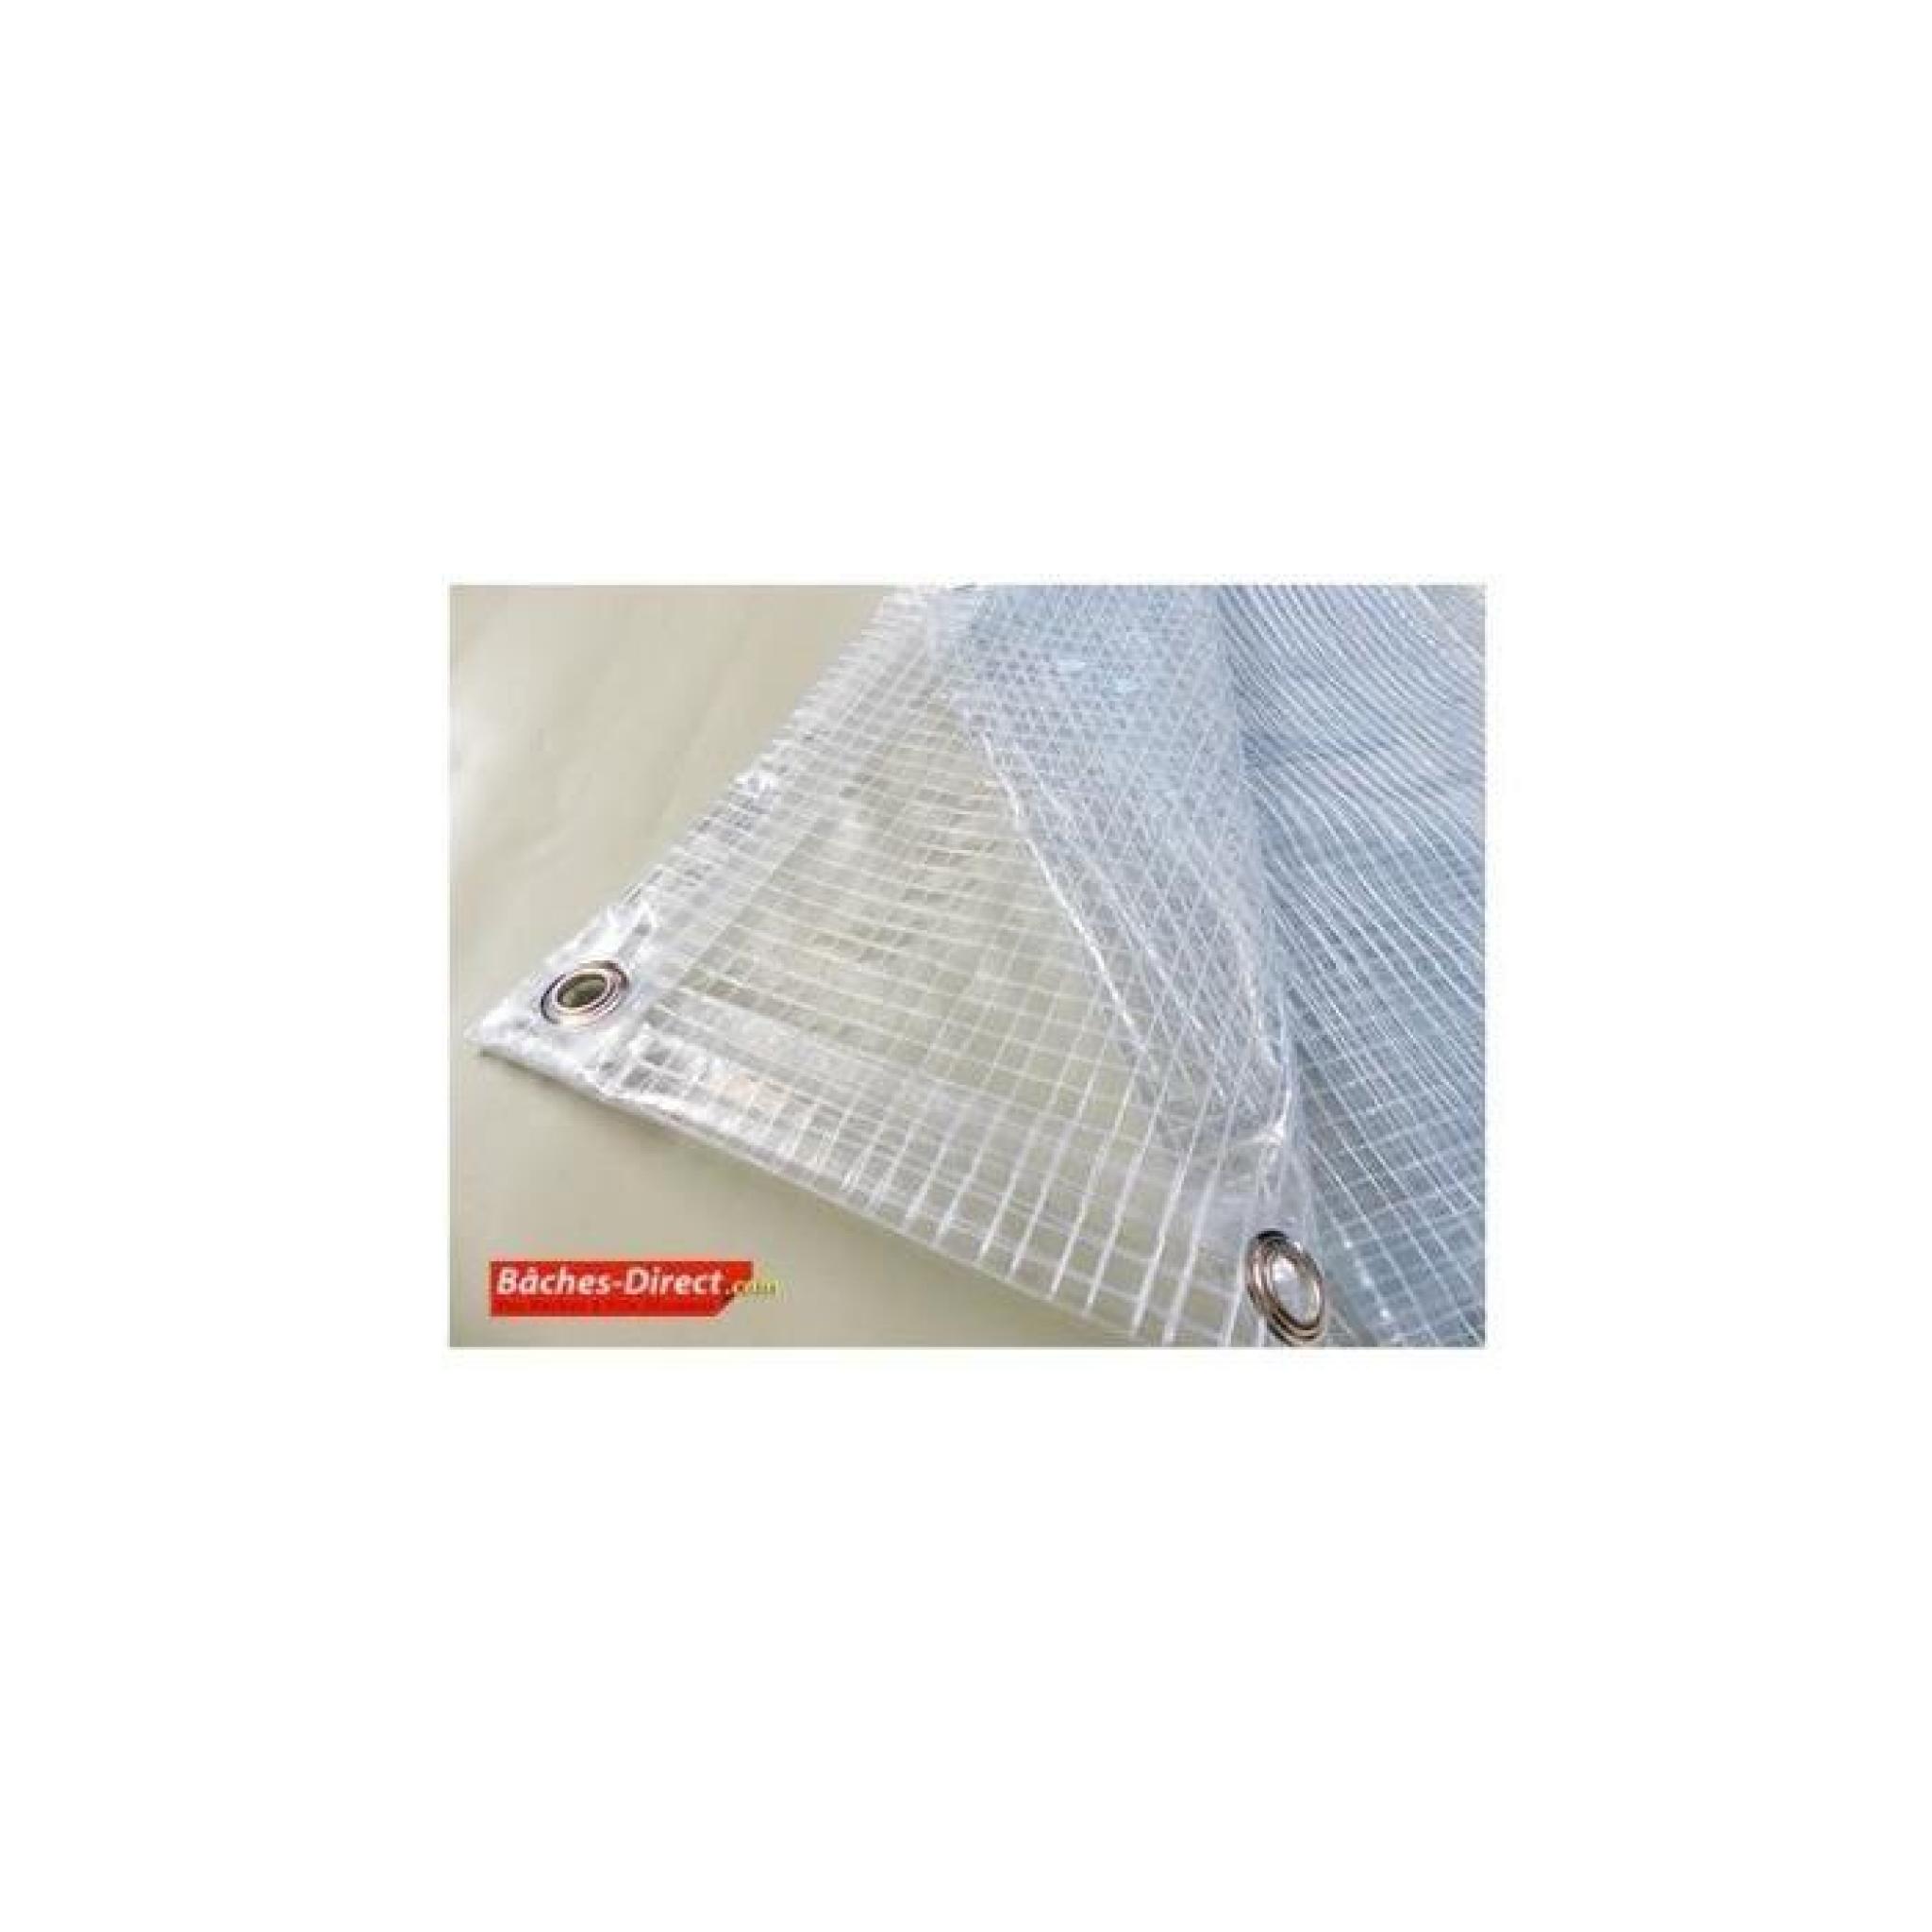 BACHES DIRECT - Bâche Pergola 400 g/m² - 5.8 x 6 m - bache transparente  pour toile de pergola - bache imperméable Transparente Armée - Achat/Vente  pergola en bois pas cher 